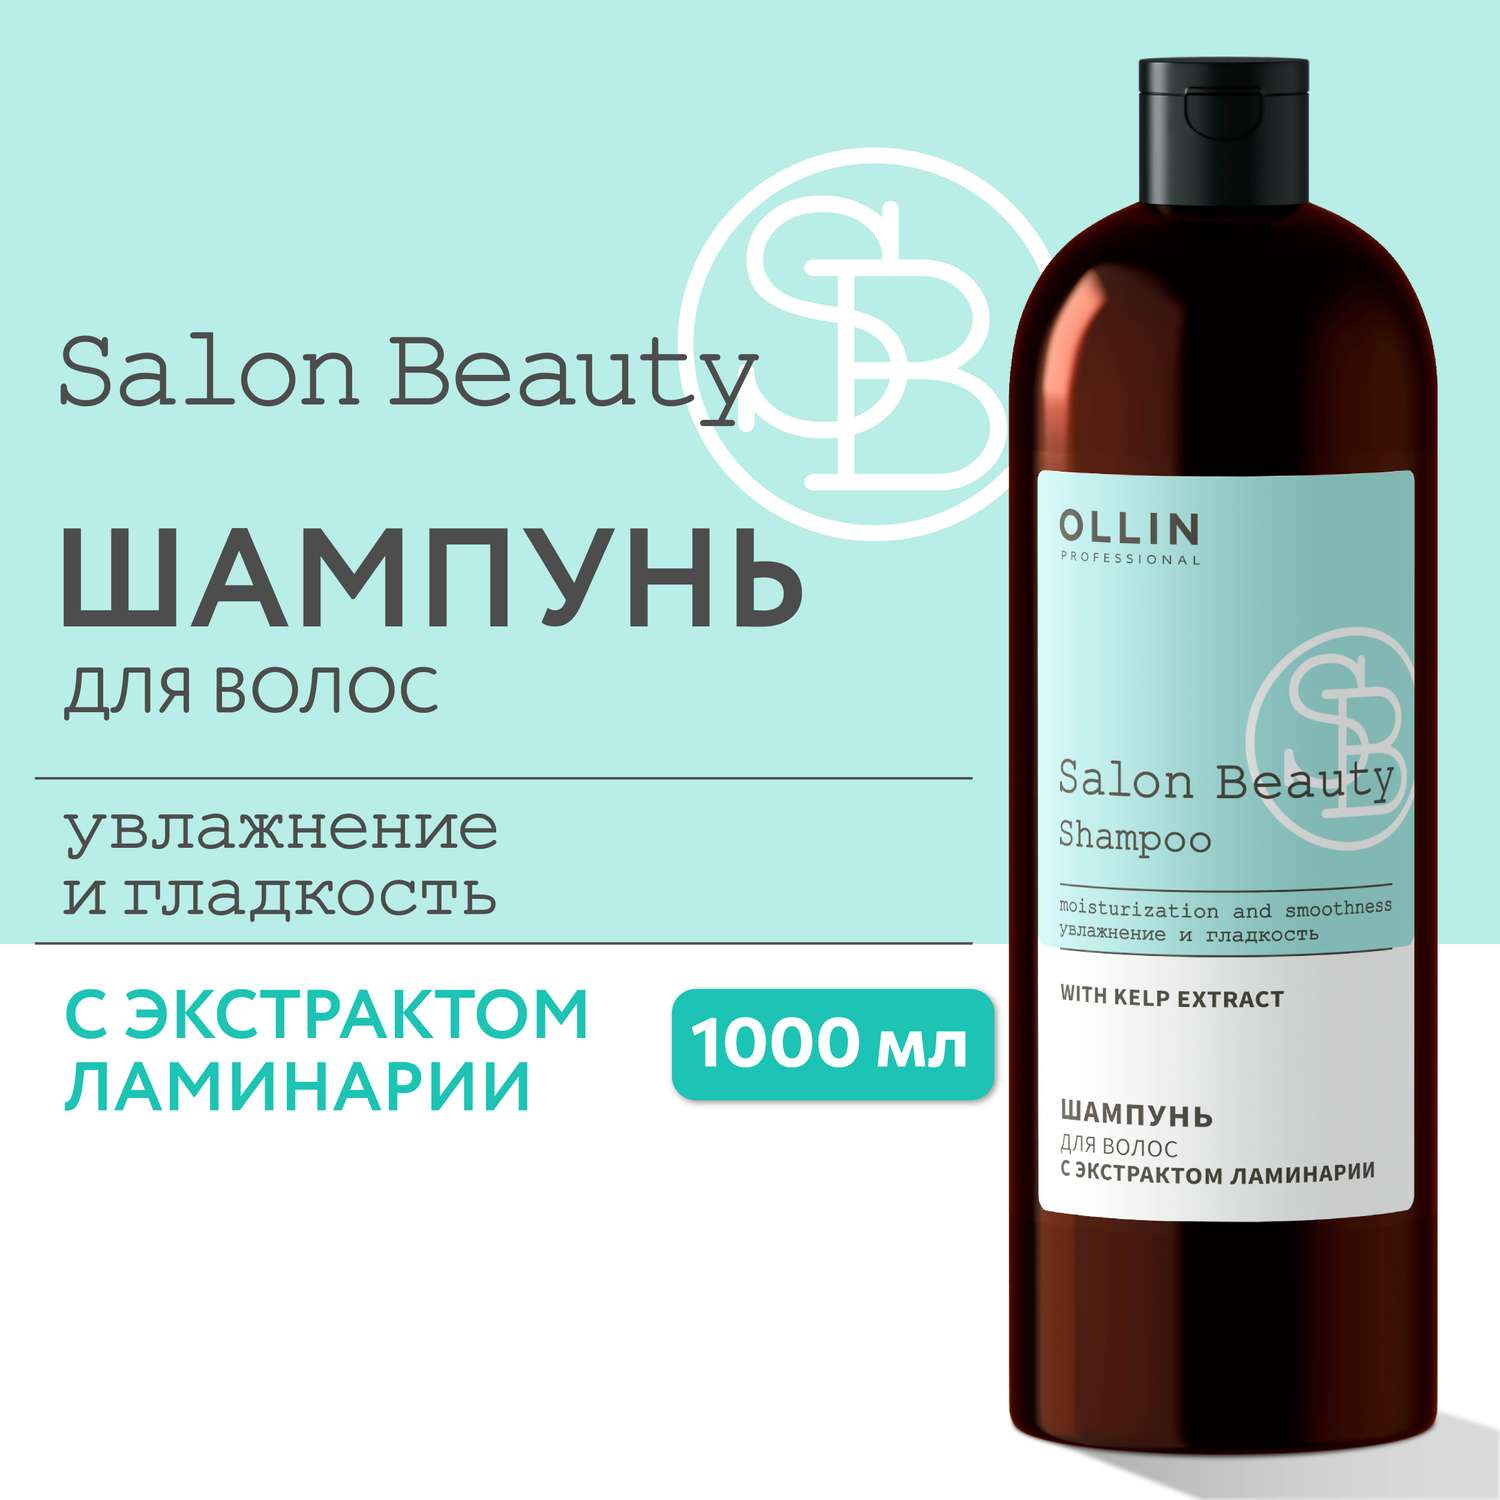 Шампунь Ollin salon beauty для ухода за волосами с экстрактом ламинарии 1000 мл - фото 2